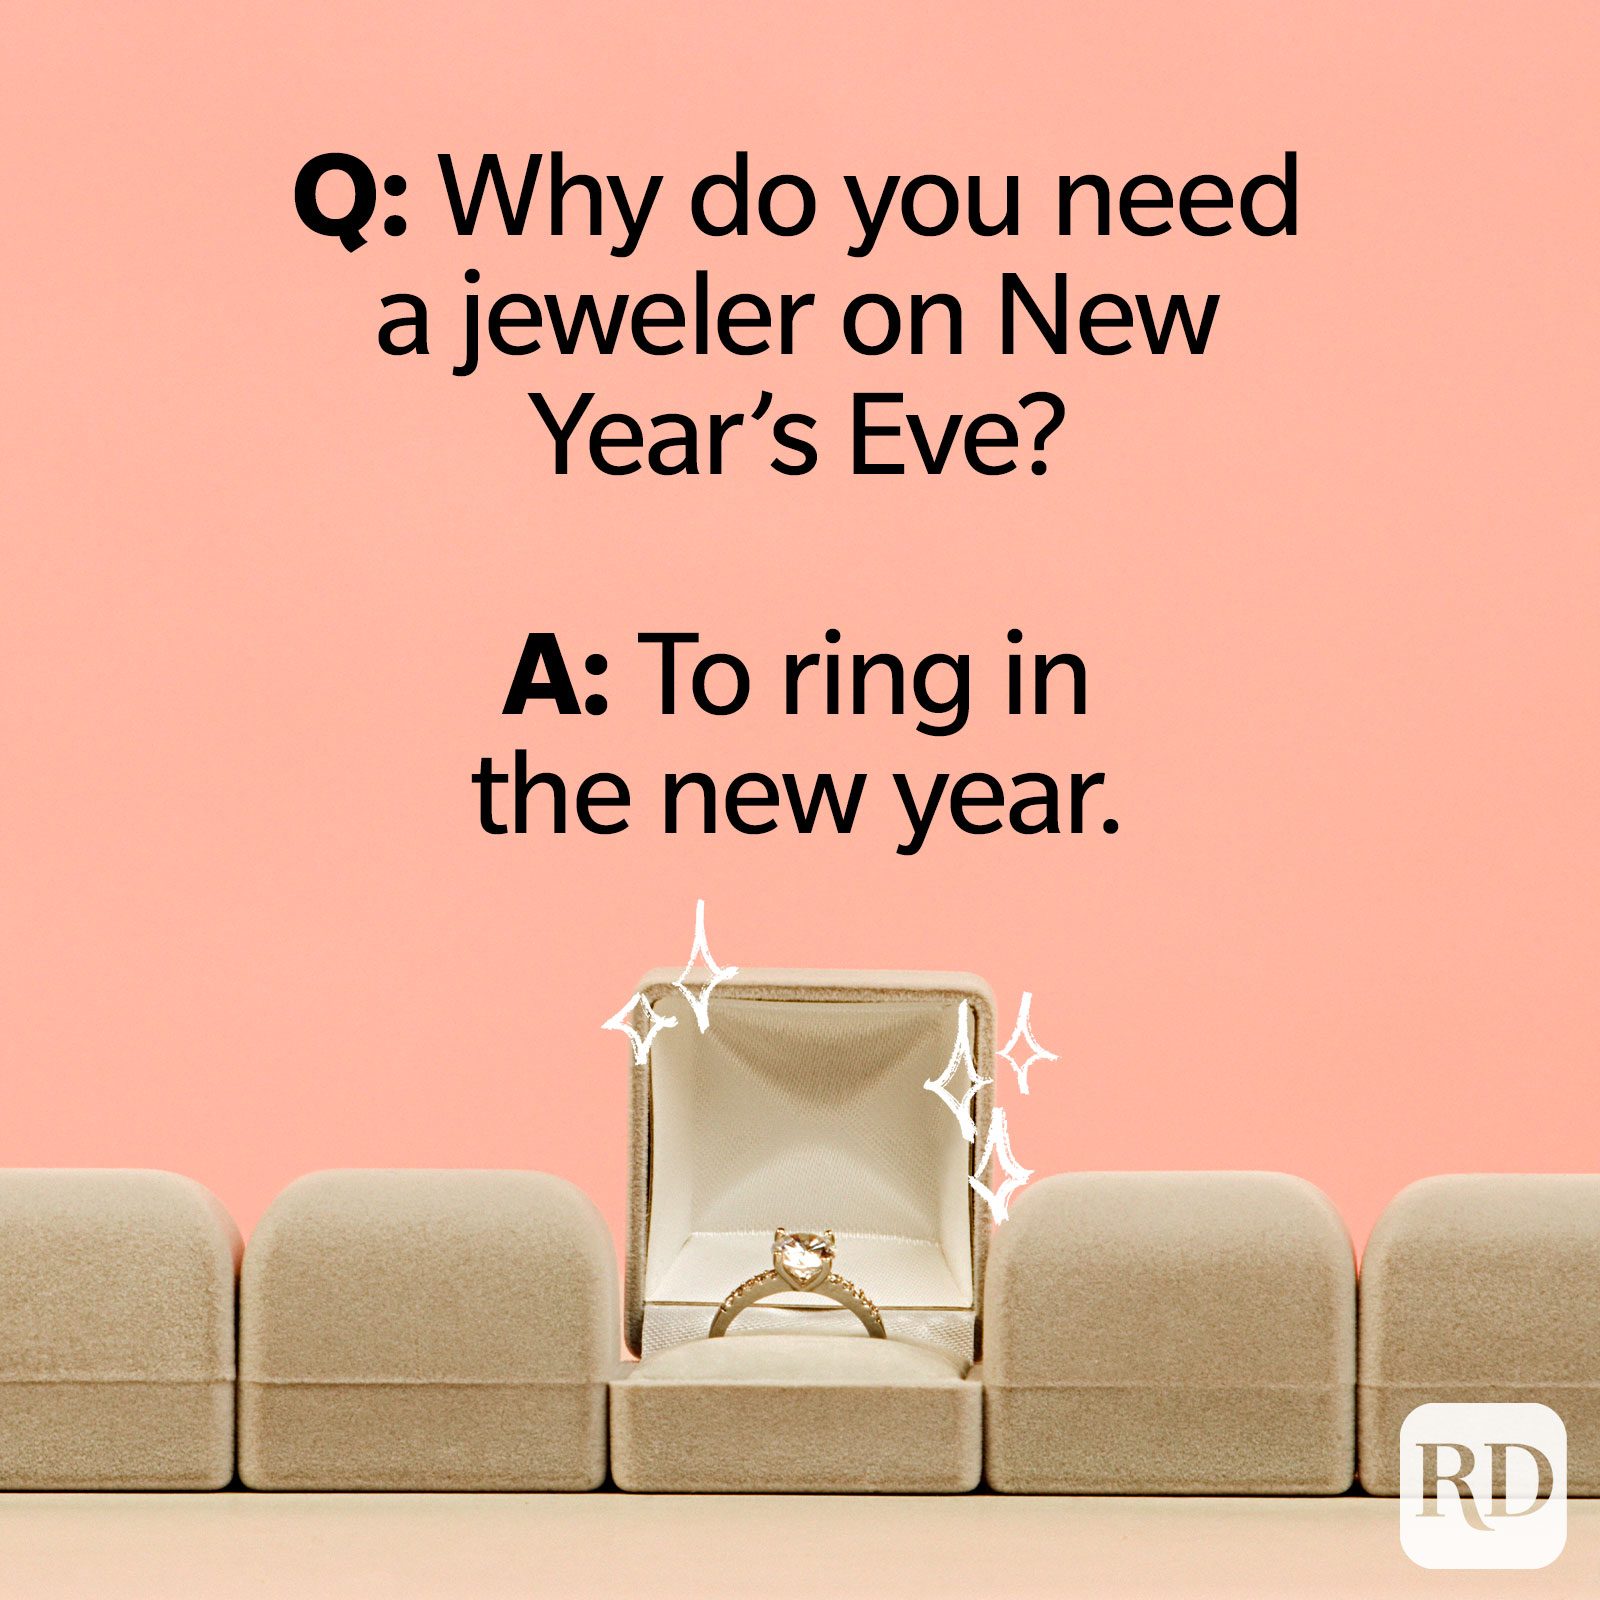 Q: Porque é que precisa de um joalheiro na véspera de Ano Novo? R: Para tocar no Ano Novo.